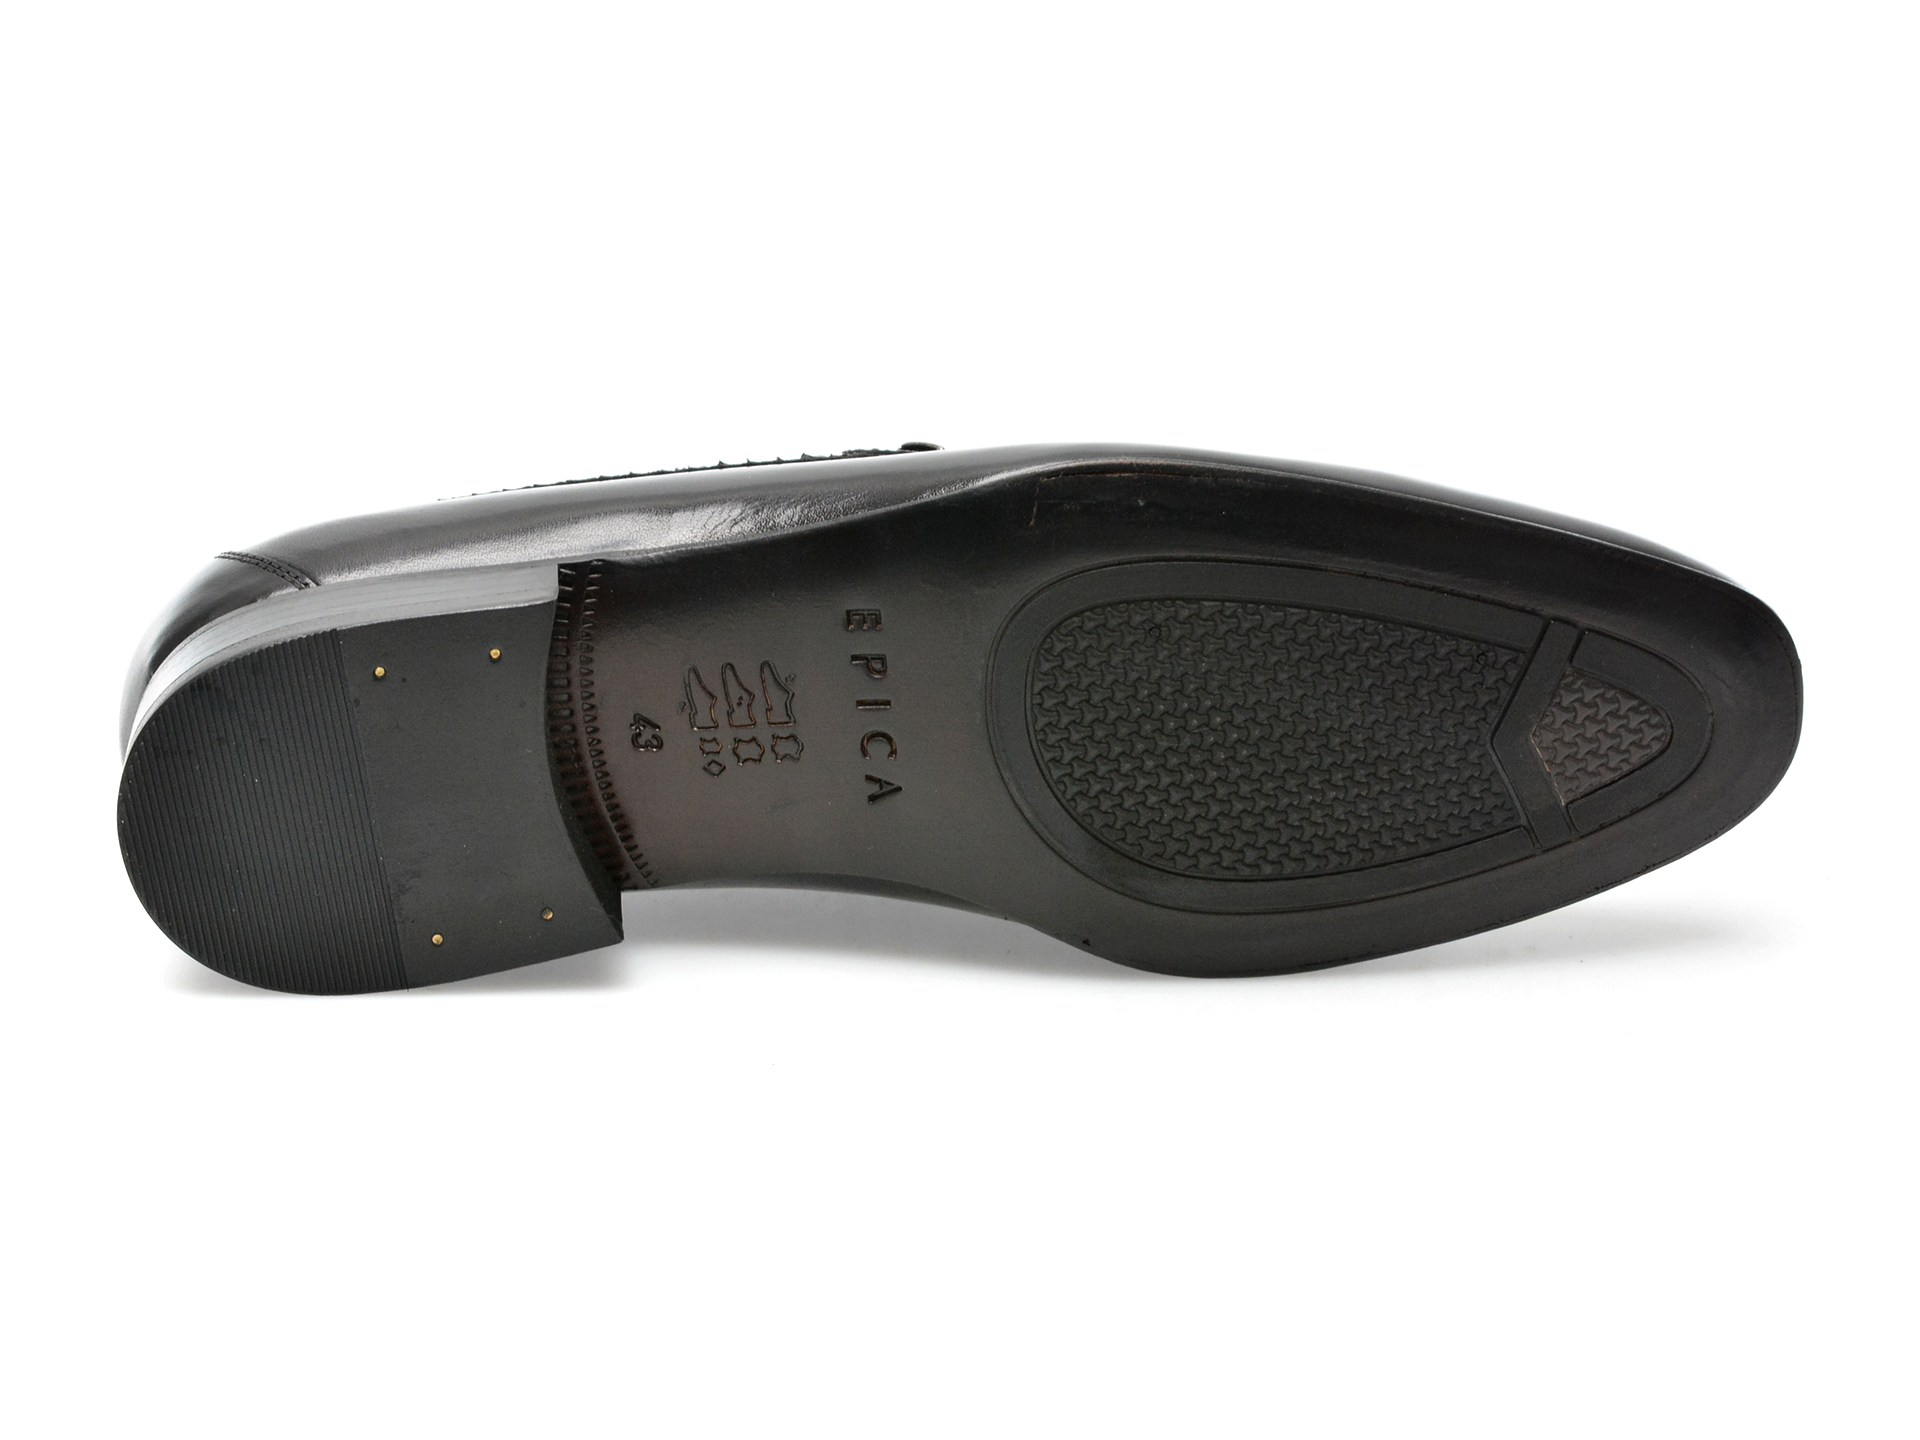 Poze Pantofi EPICA negri, 48482, din piele naturala Tezyo